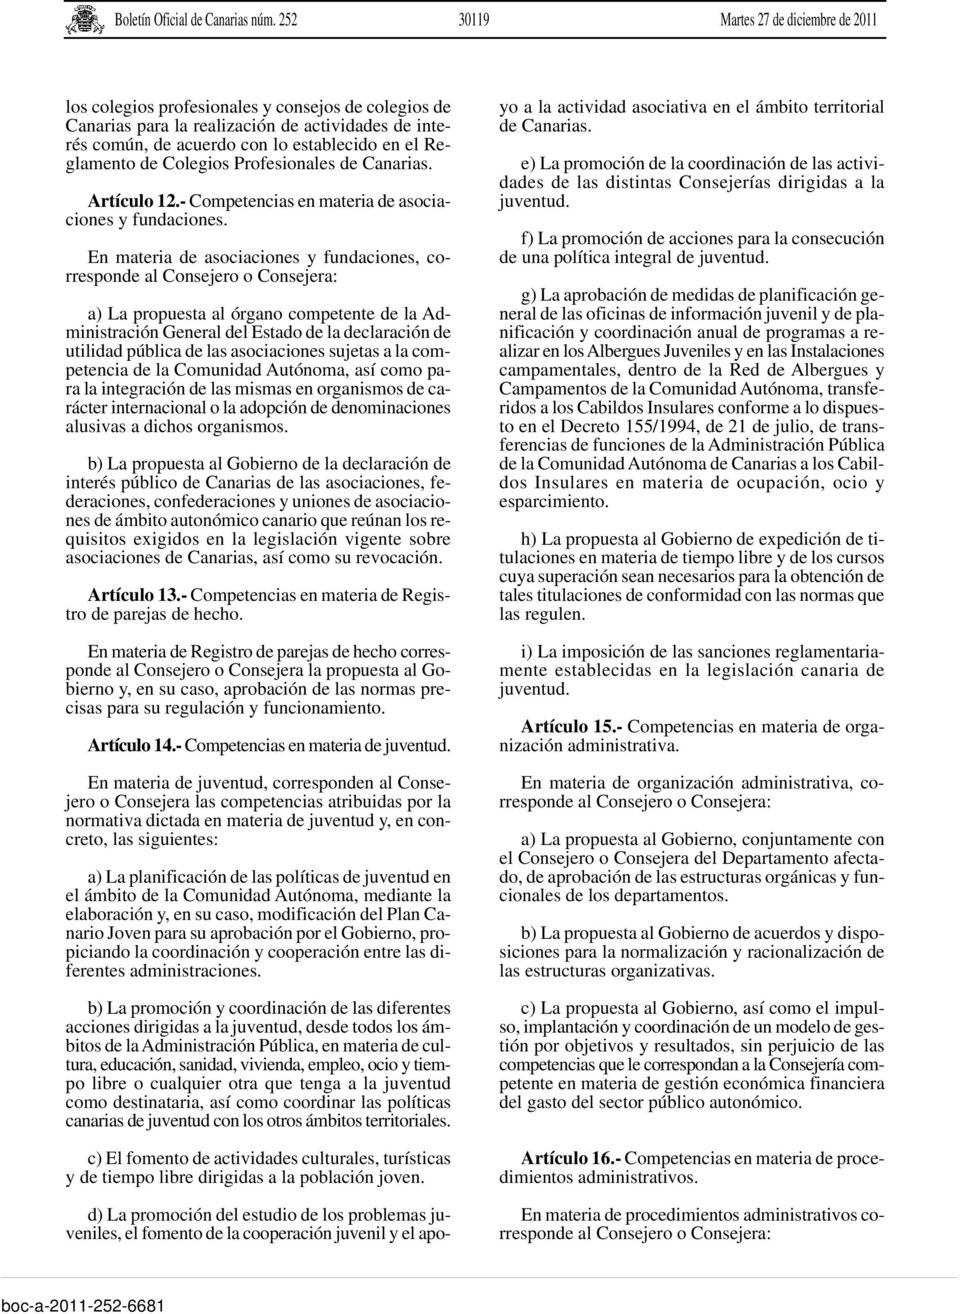 Reglamento de Colegios Profesionales de Canarias. Artículo 12.- Competencias en materia de asociaciones y fundaciones.